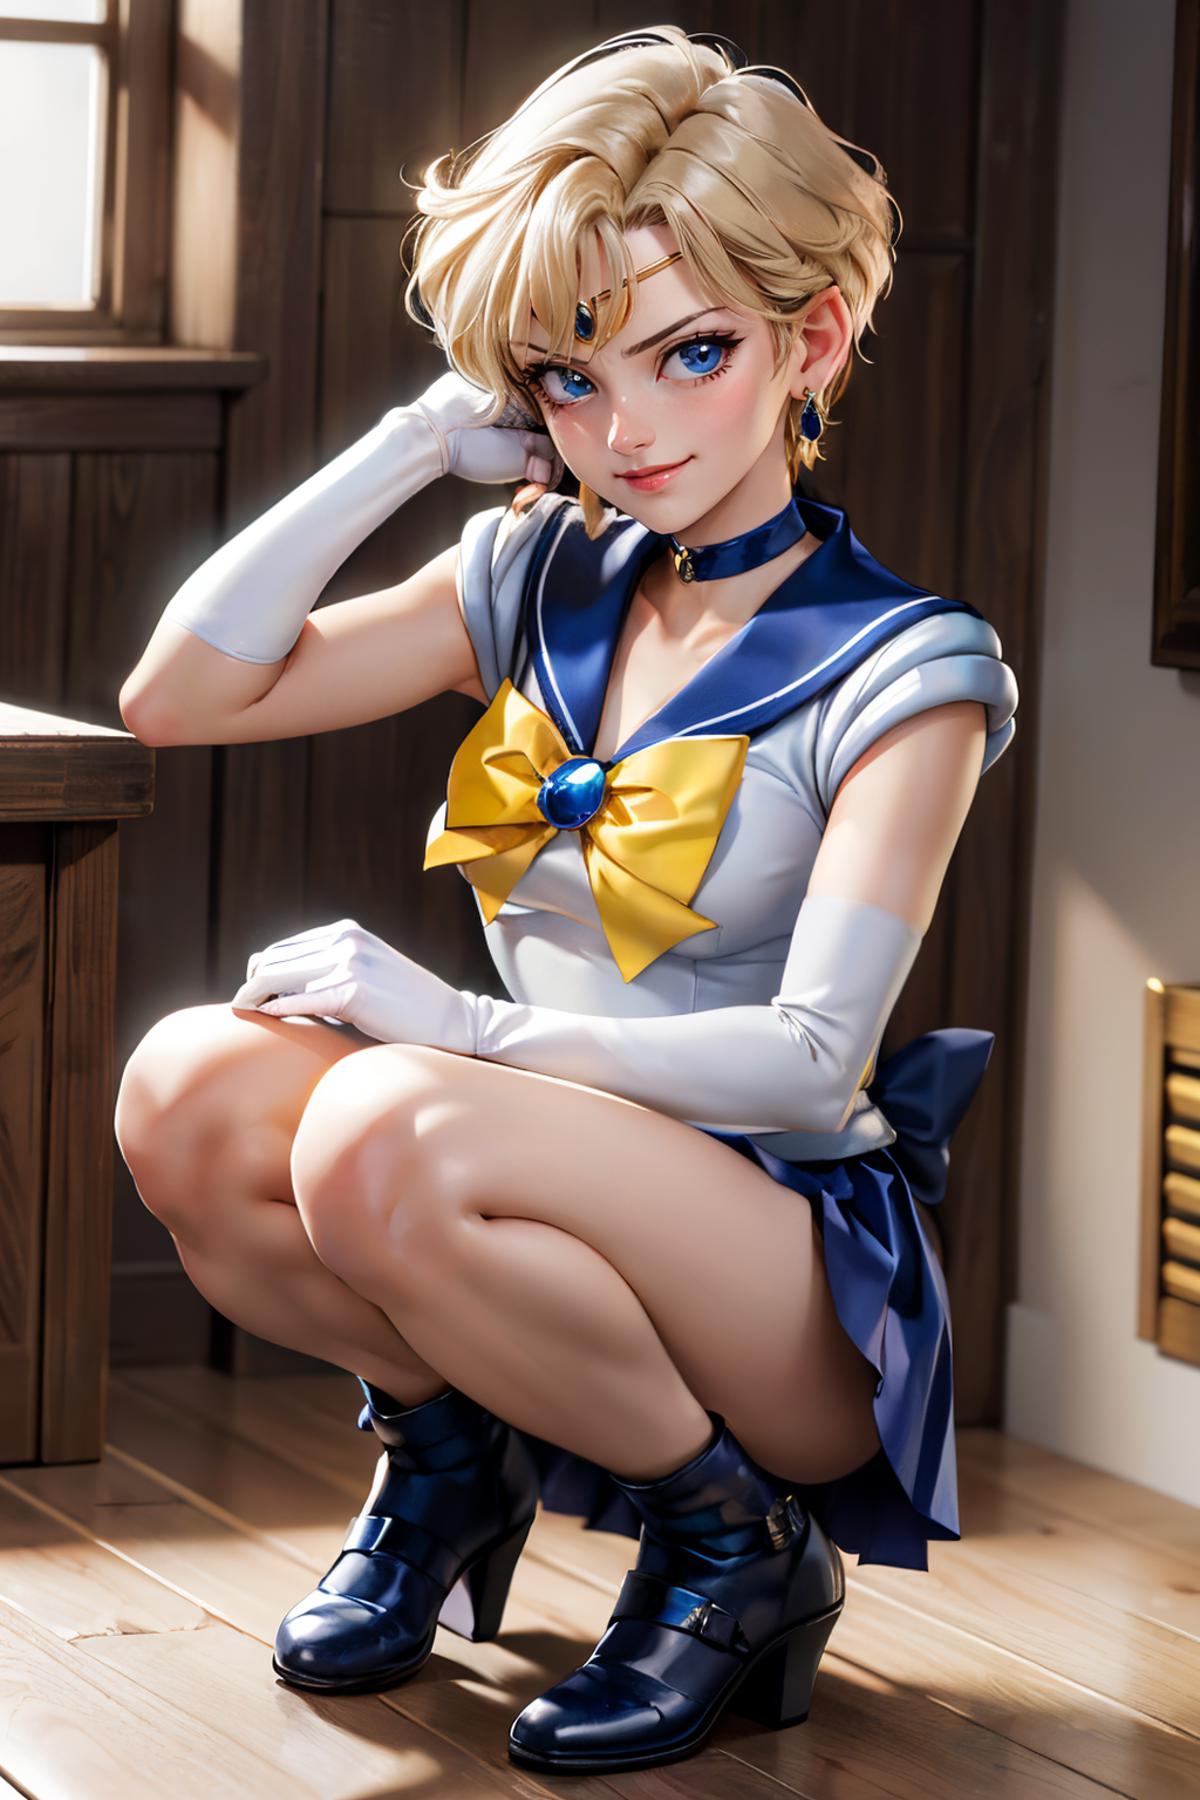 Sailor Uranus / Haruka Tenoh (Sailor Moon) - Lora image by wikkitikki